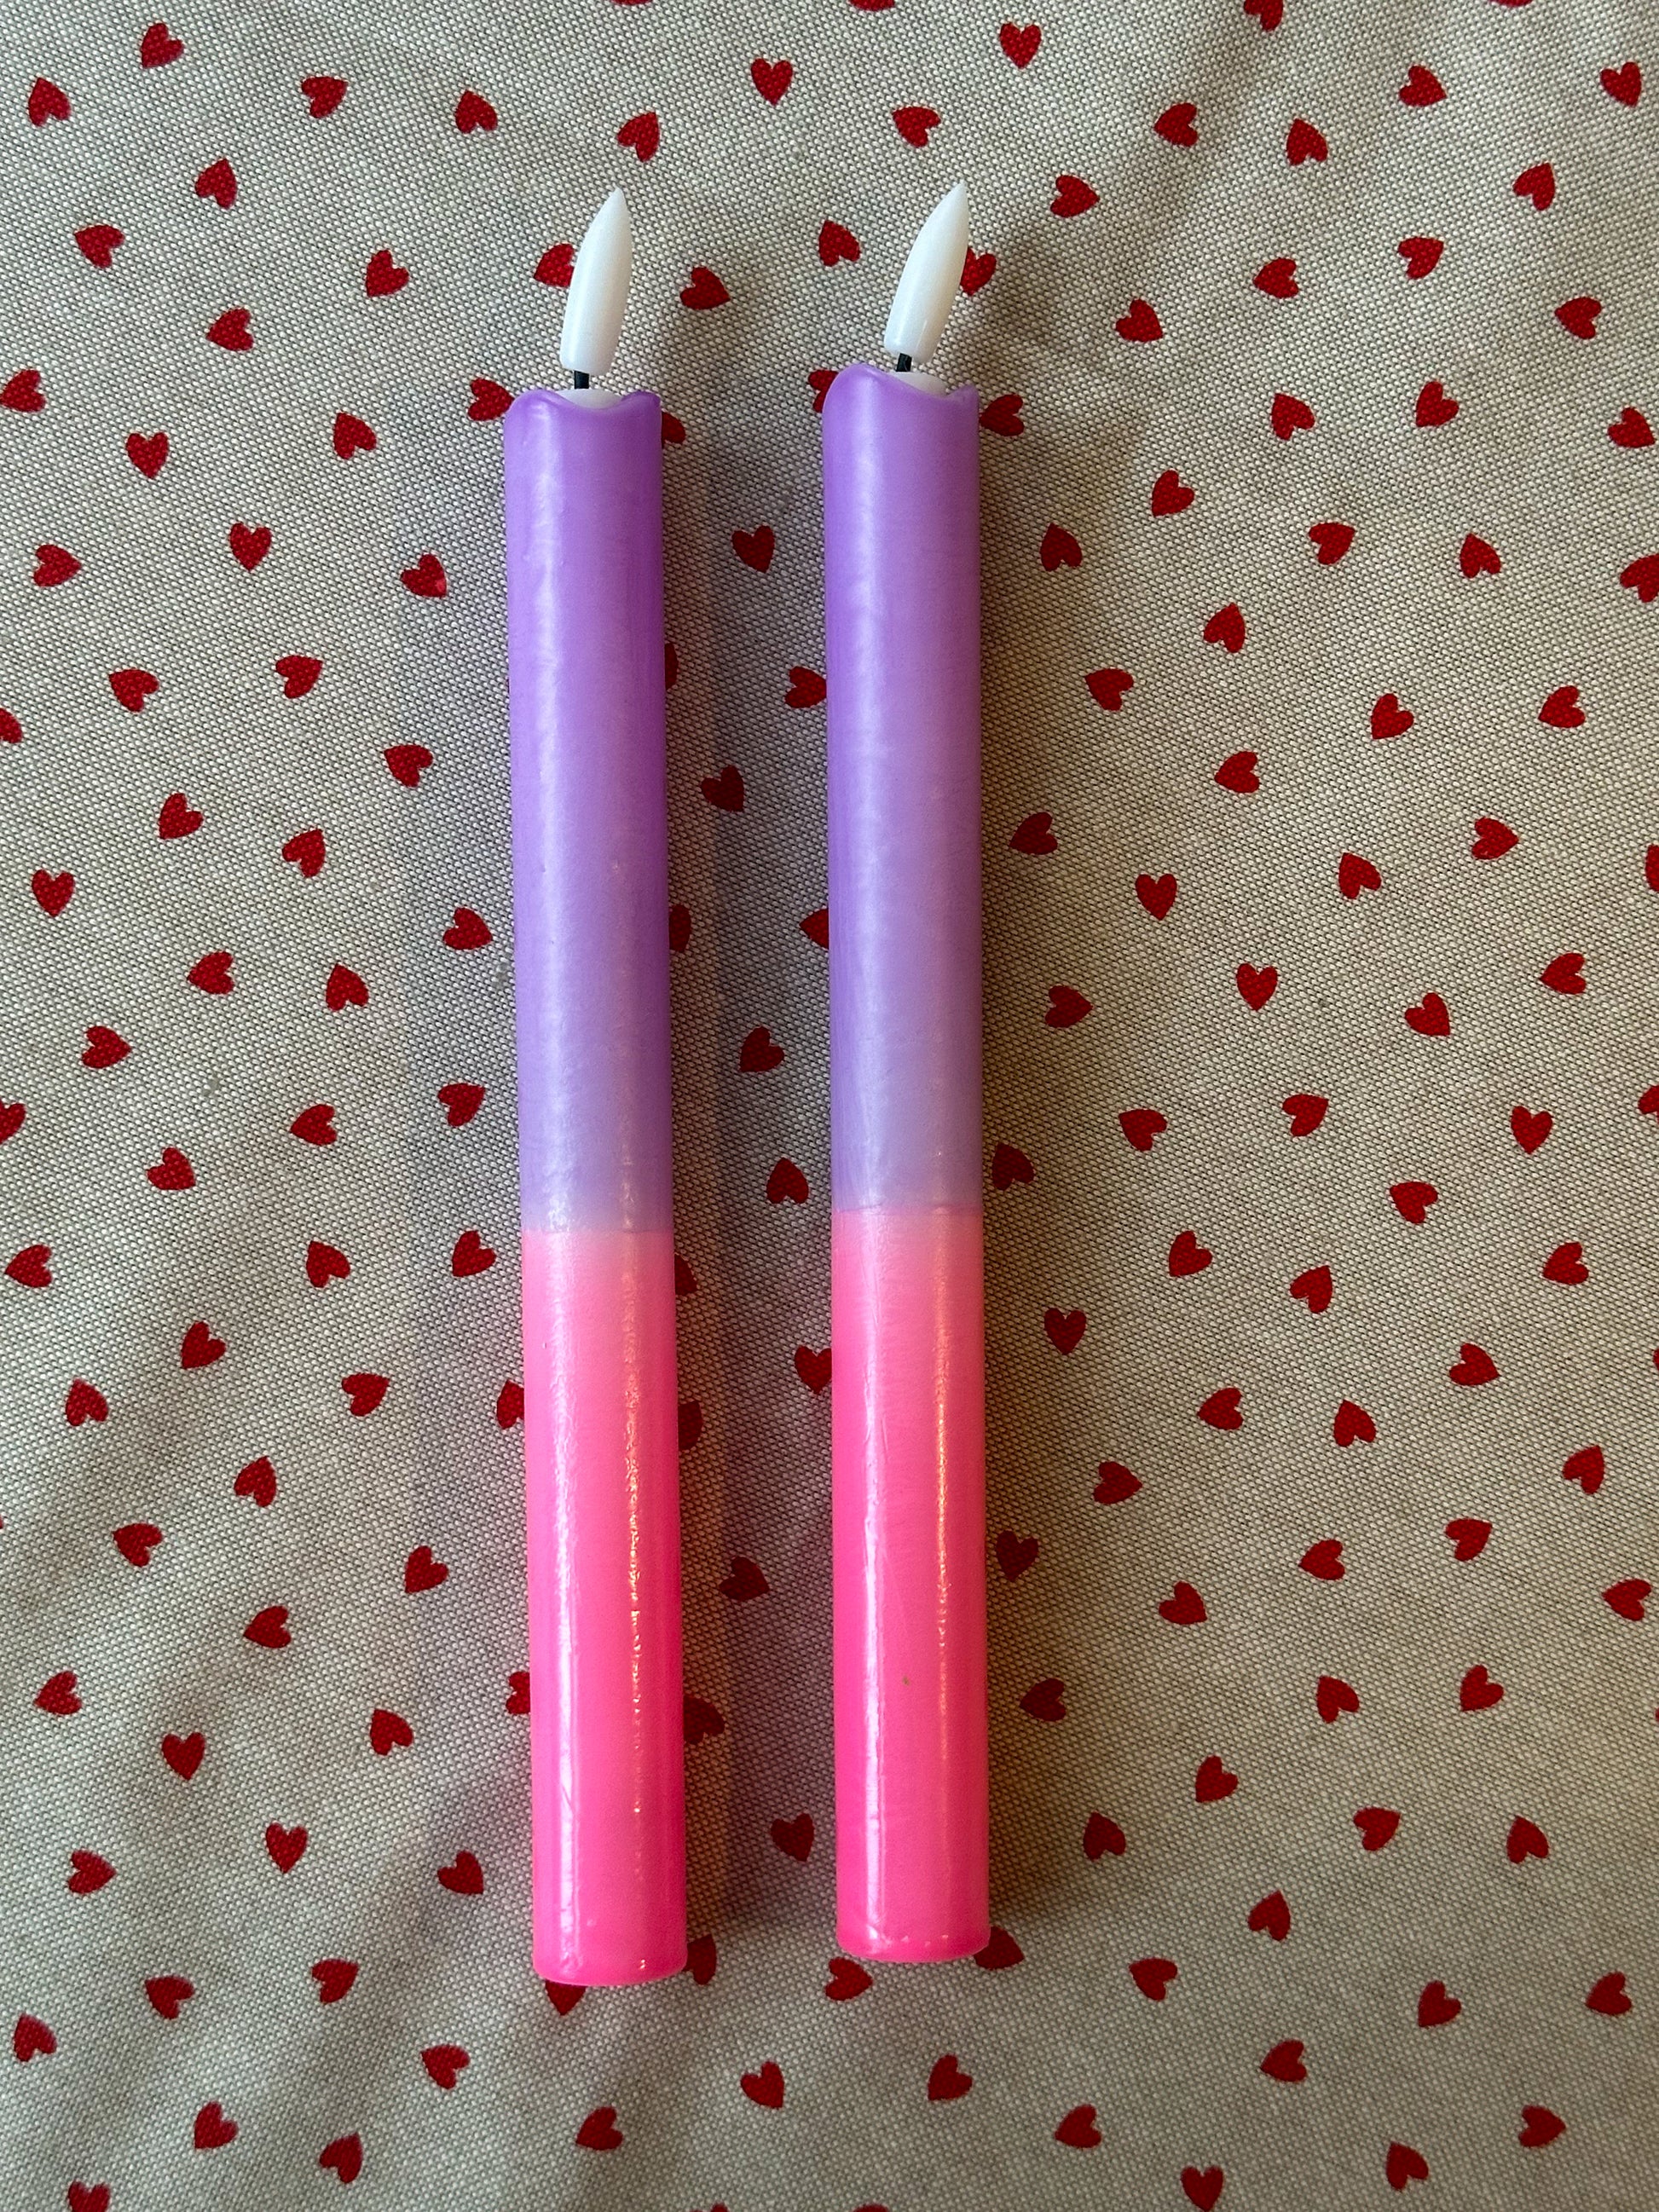 Led kaarsen dip dye paars roze (2 stuks) - RUBY Conceptstore 